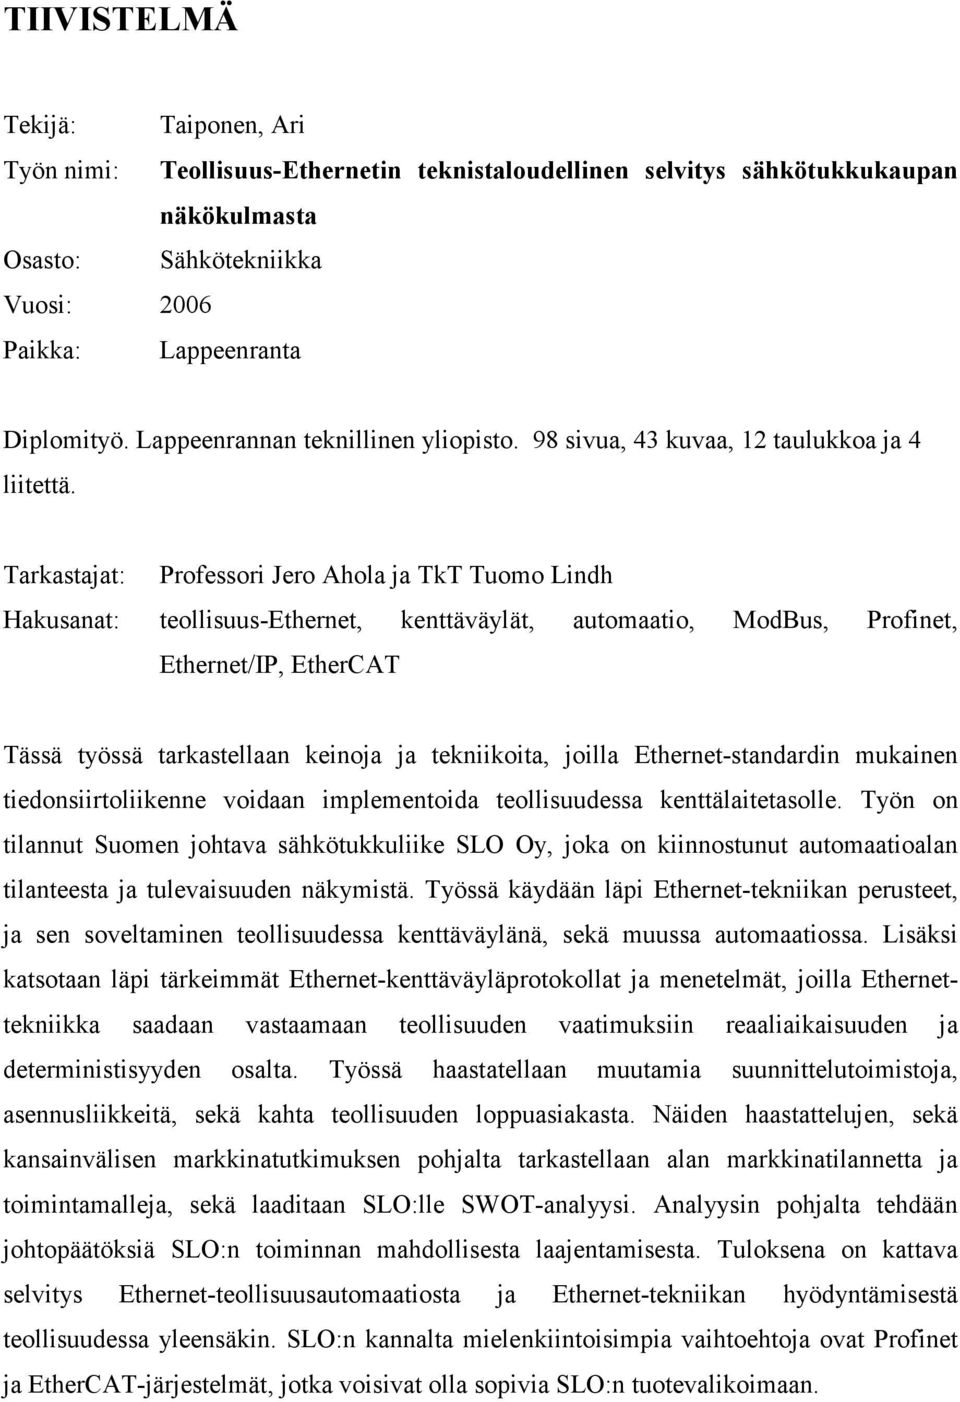 Tarkastajat: Professori Jero Ahola ja TkT Tuomo Lindh Hakusanat: teollisuus-ethernet, kenttäväylät, automaatio, ModBus, Profinet, Ethernet/IP, EtherCAT Tässä työssä tarkastellaan keinoja ja